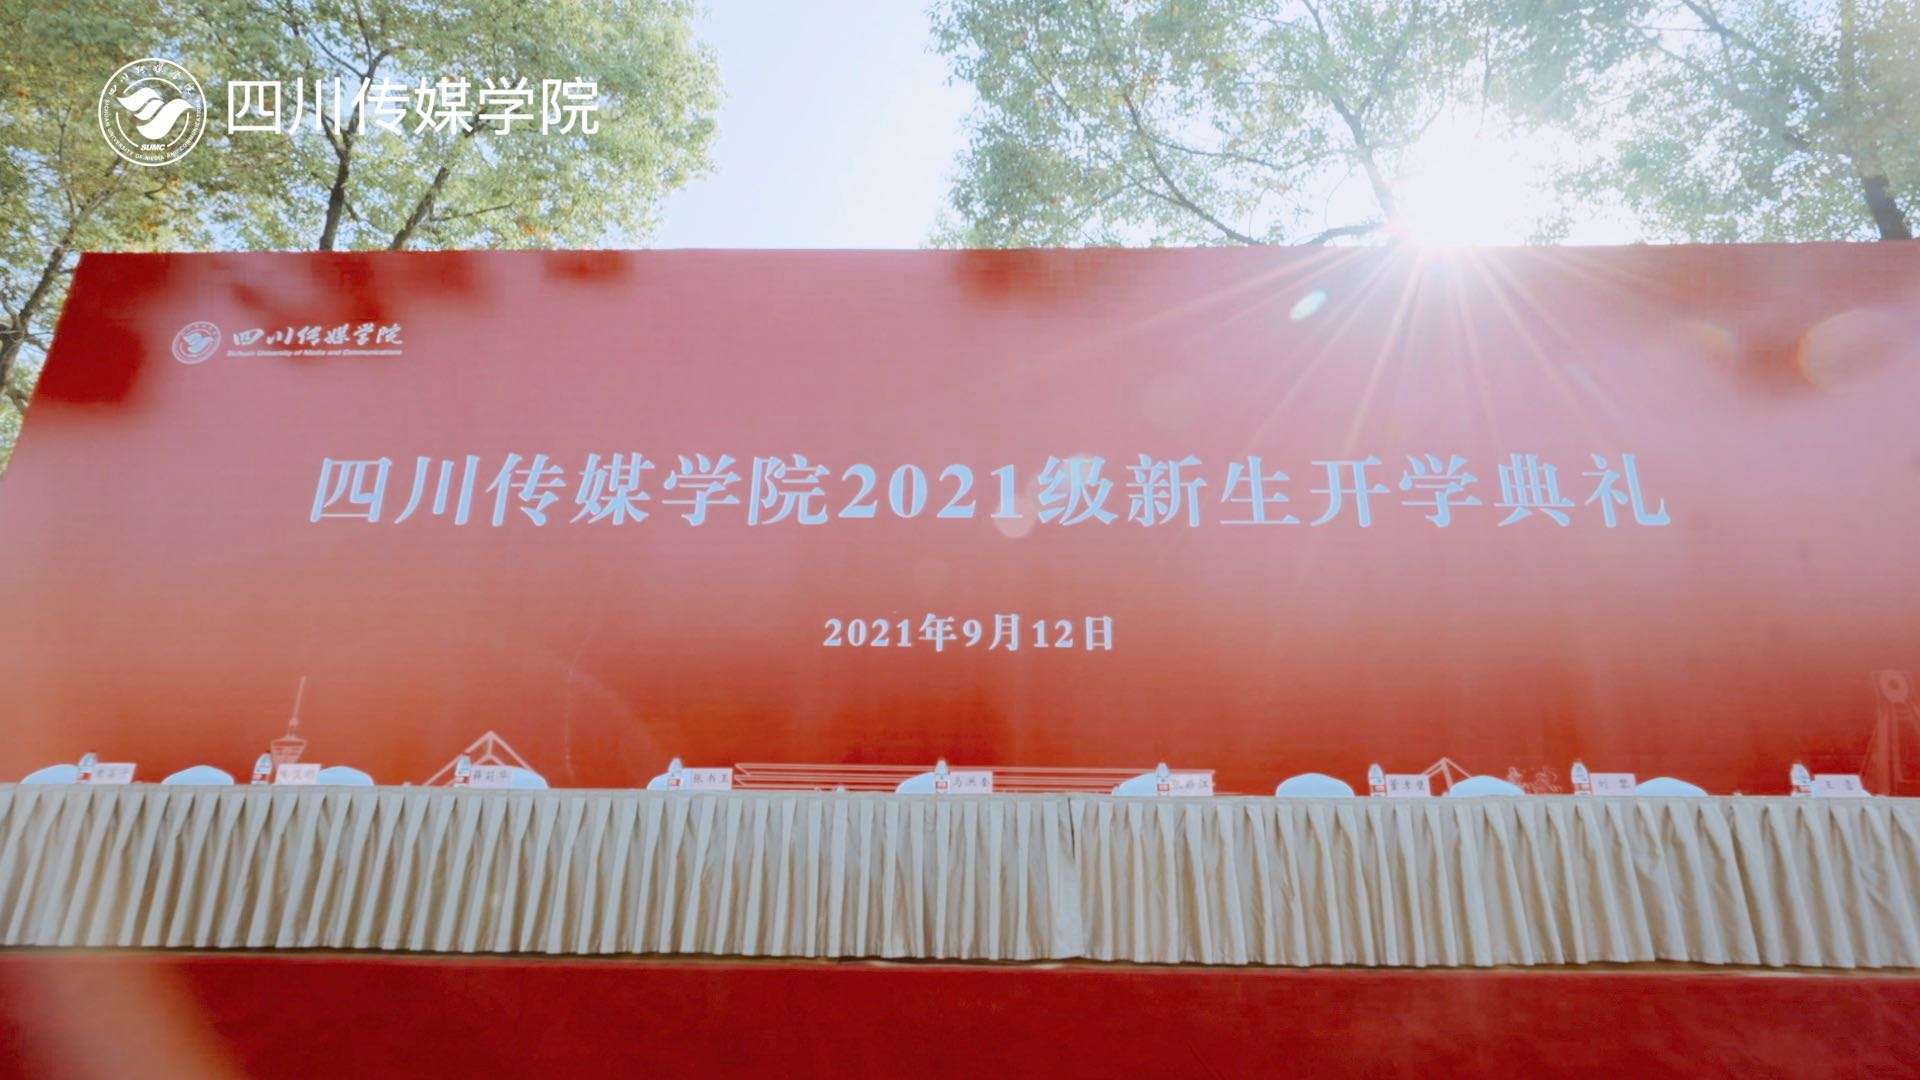 四川传媒学院2021级新生开学典礼